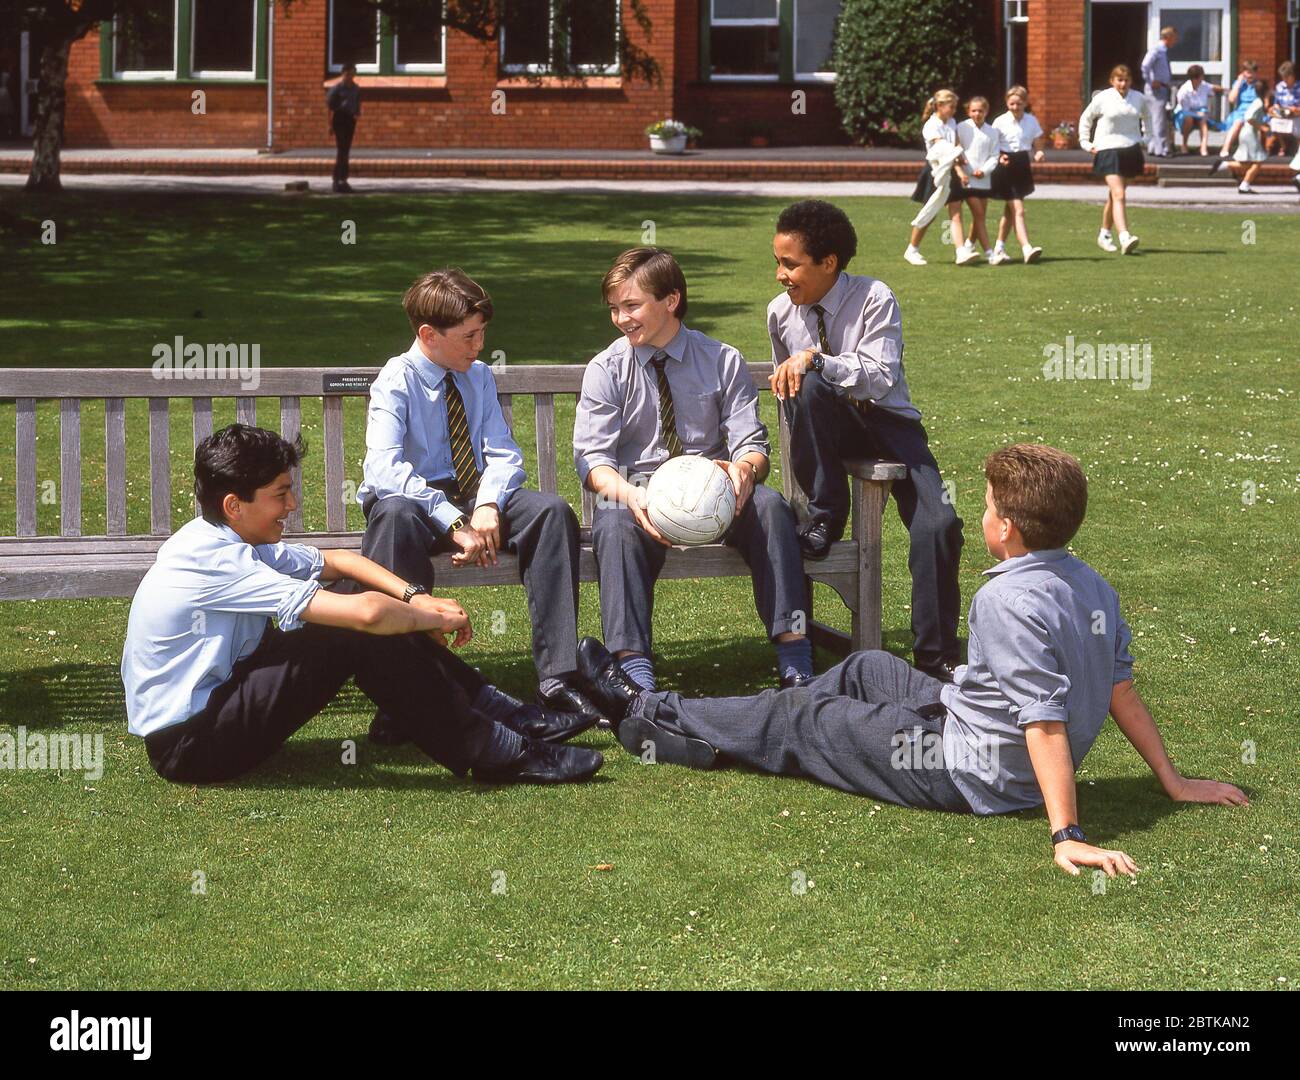 Garçons d'école assis dans le terrain d'école tenant le football, Surrey, Angleterre, Royaume-Uni Banque D'Images